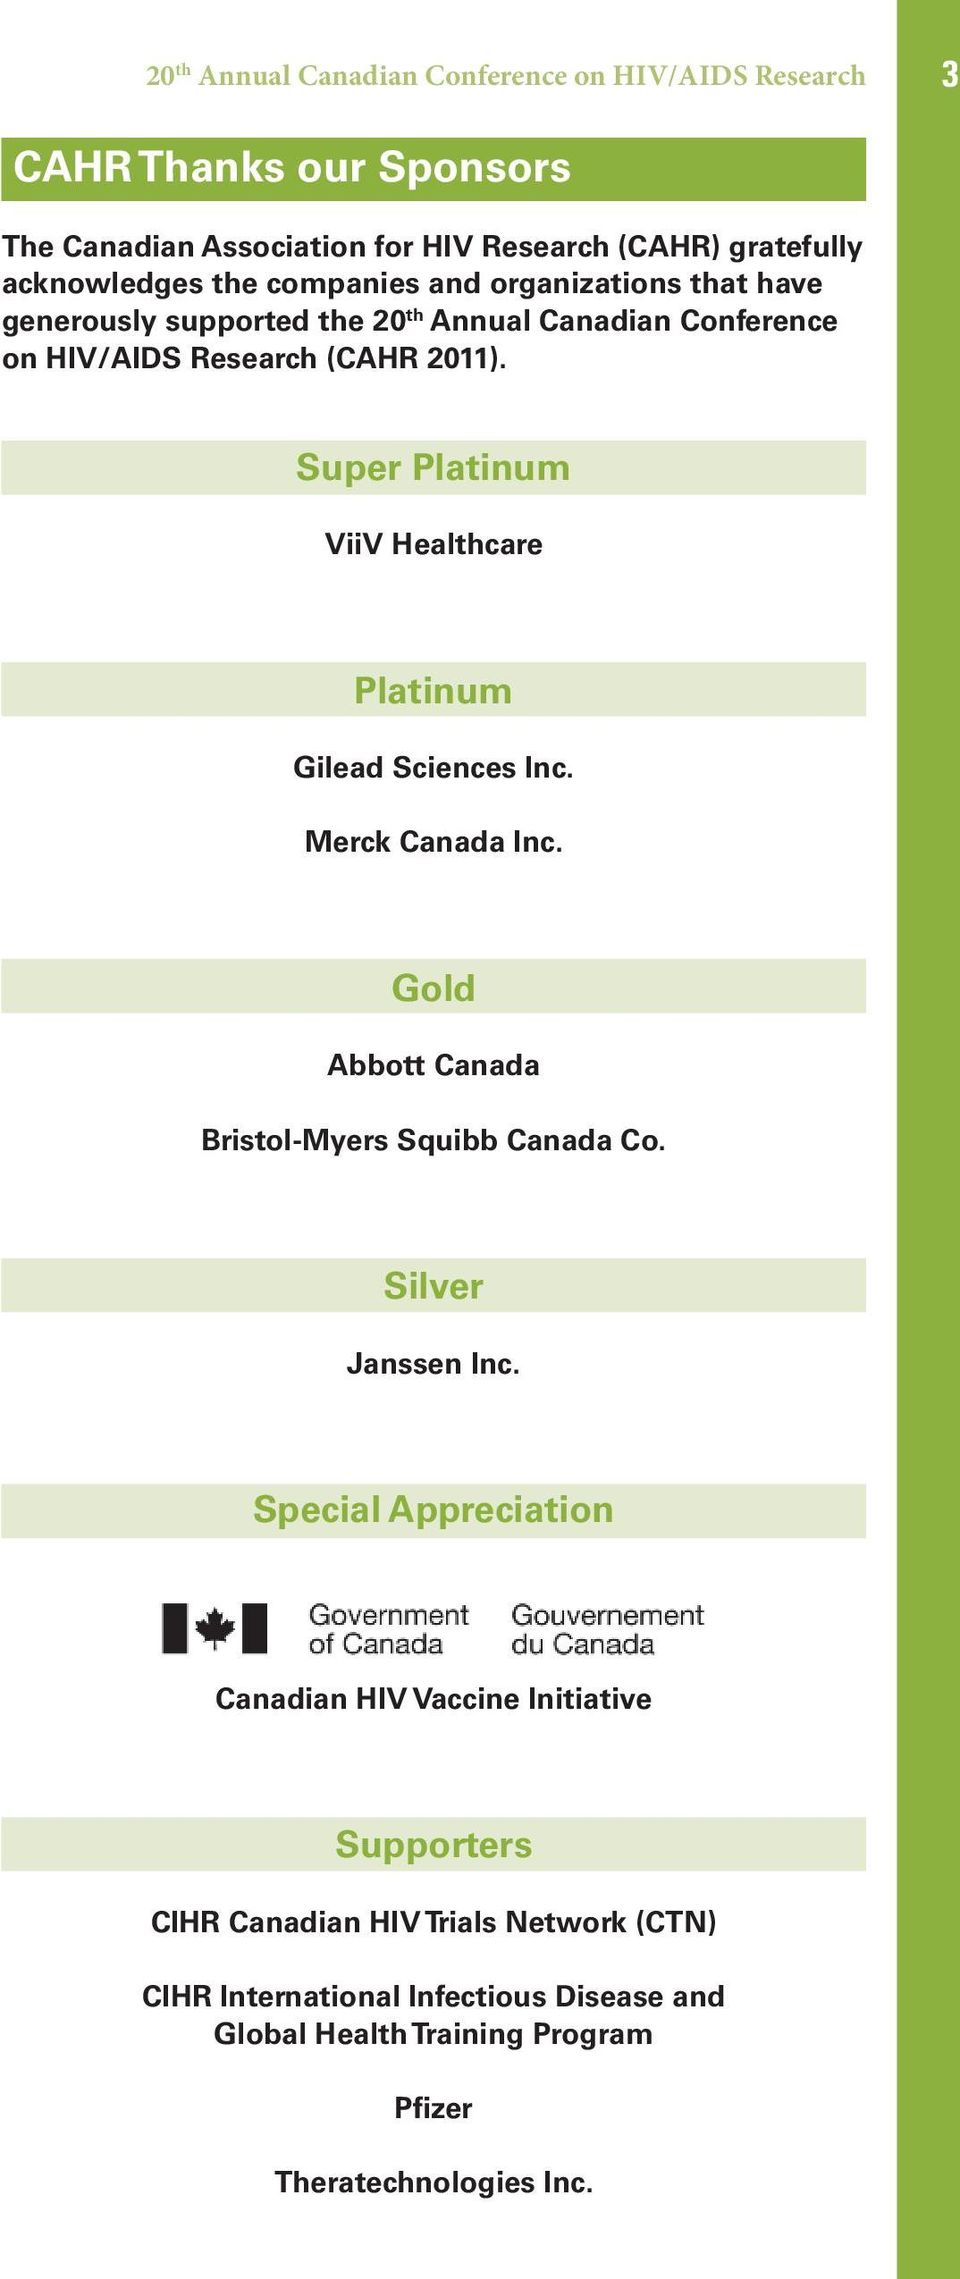 Super Platinum ViiV Healthcare Platinum Gilead Sciences Inc. Merck Canada Inc. Gold Abbott Canada Bristol-Myers Squibb Canada Co. Silver Janssen Inc.